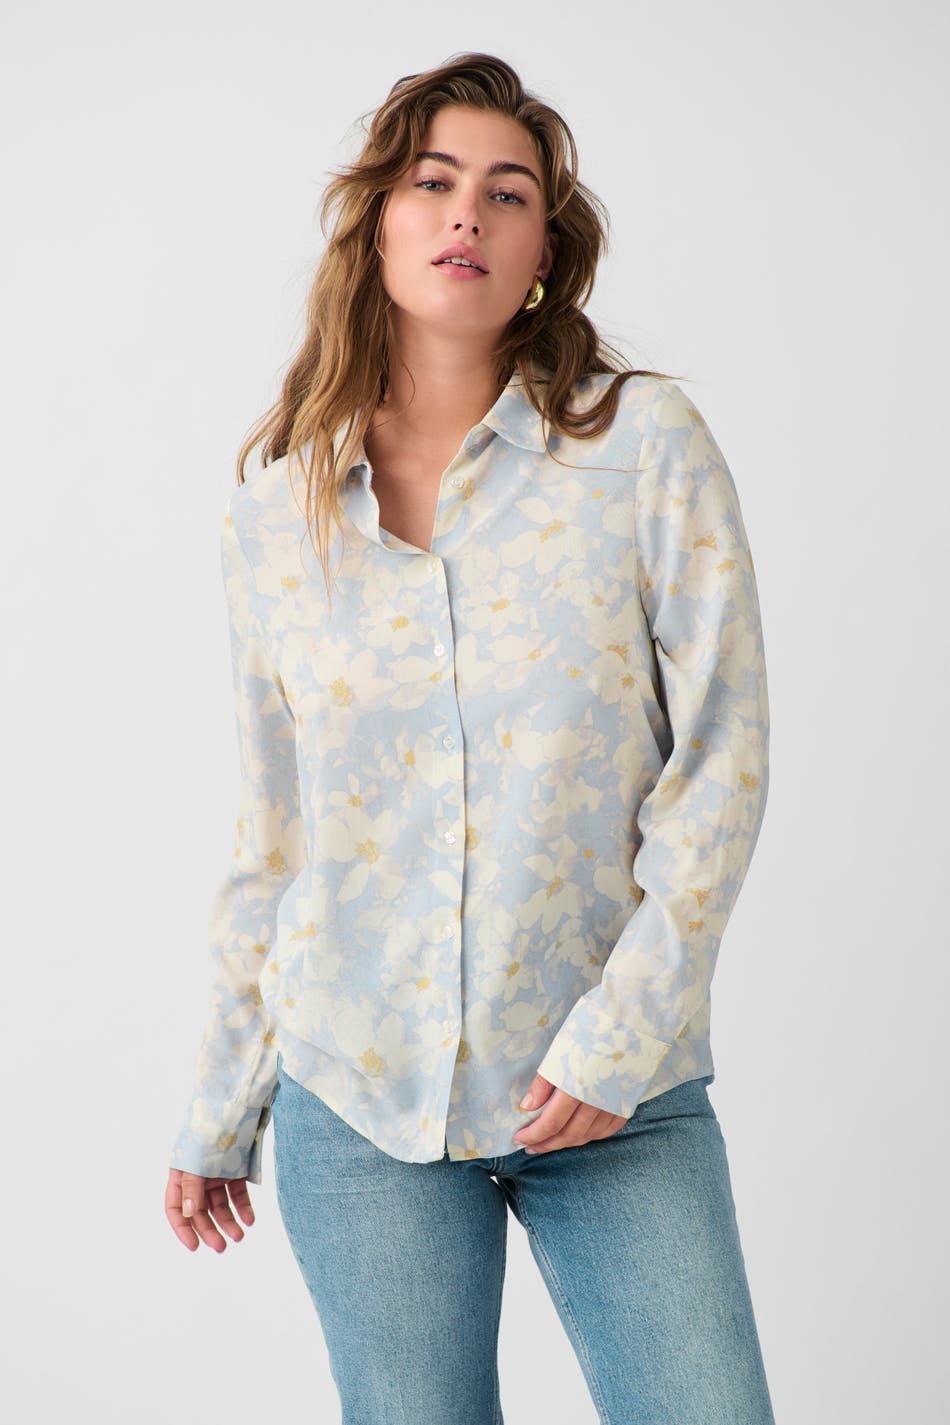 Gina Tricot - Viscose shirt - skjortor - Yellow - M - Female